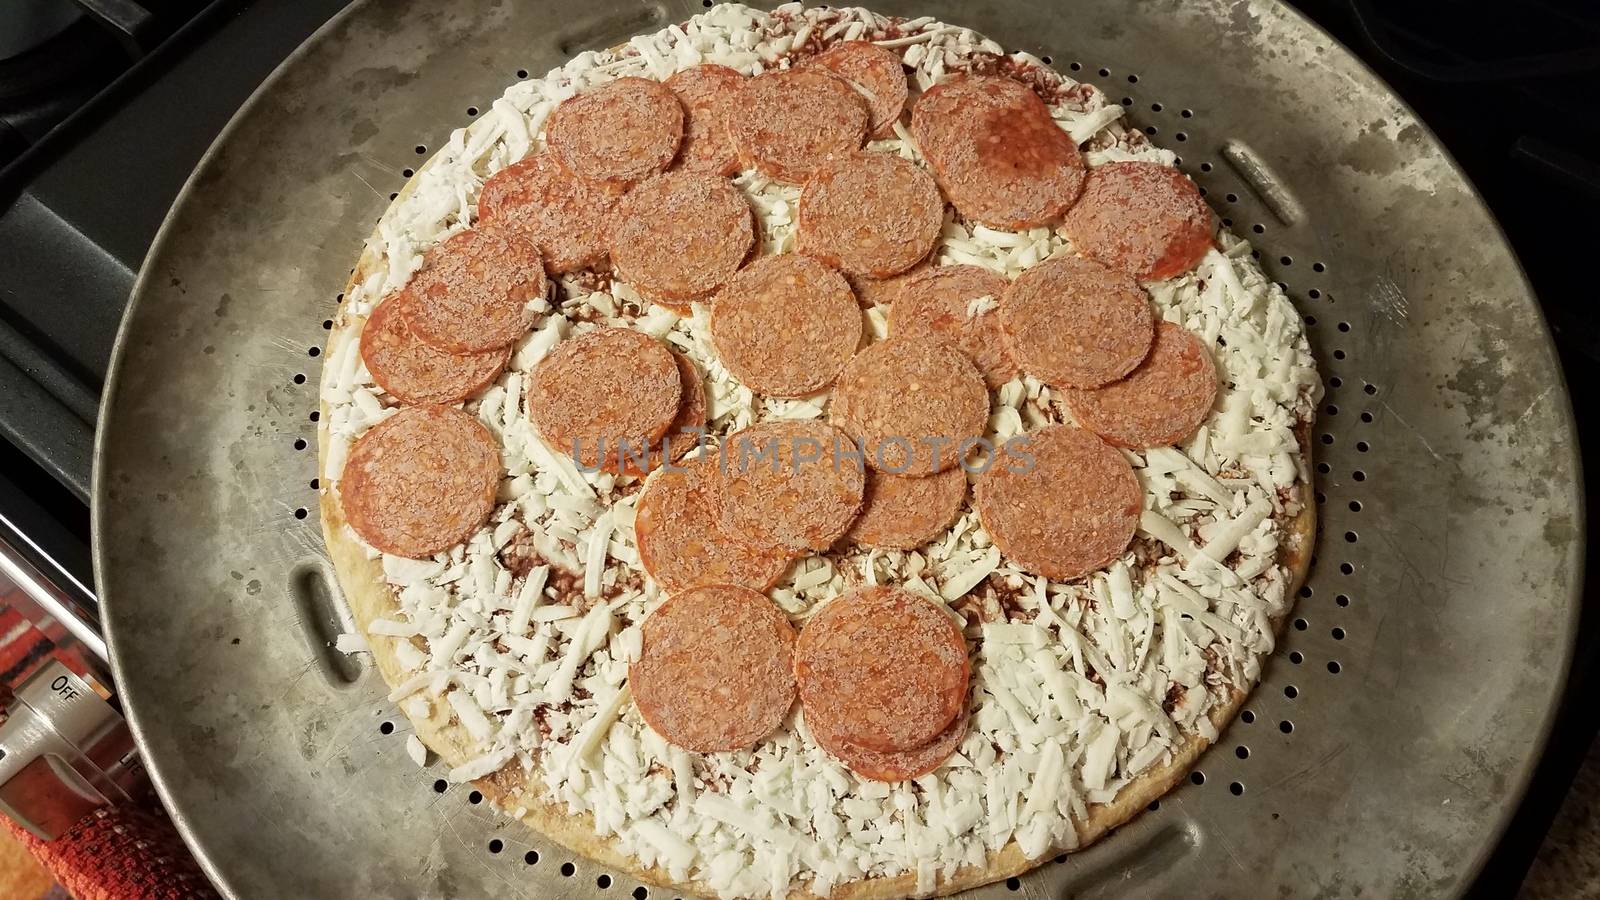 frozen pepperoni meat on pizza on metal baking tray by stockphotofan1